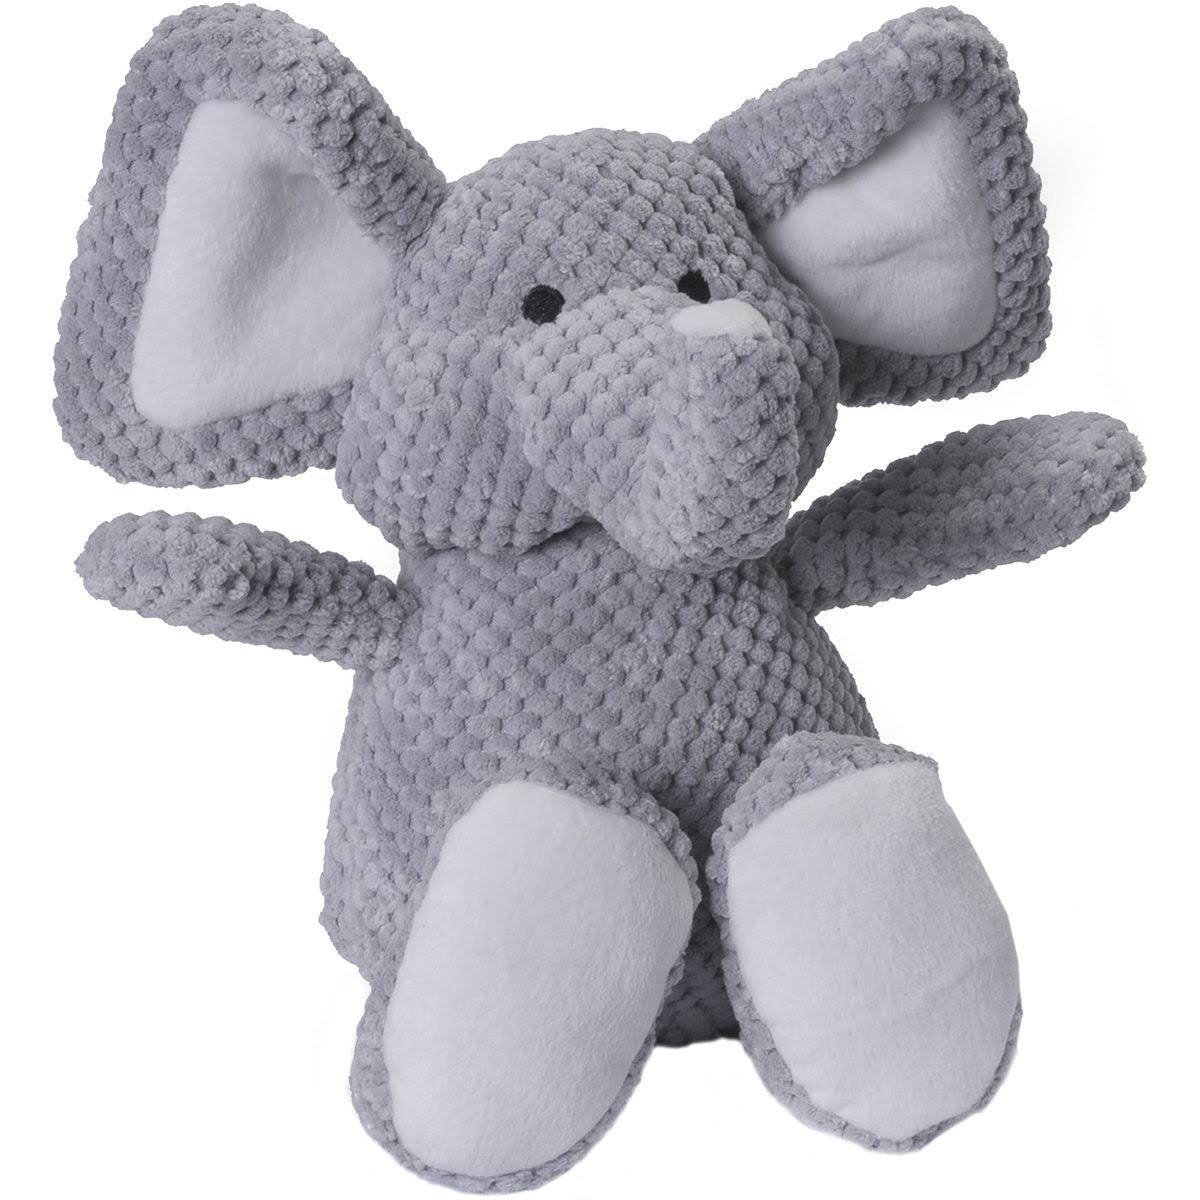 GoDog Checkers Elephant Plush Dog Toys